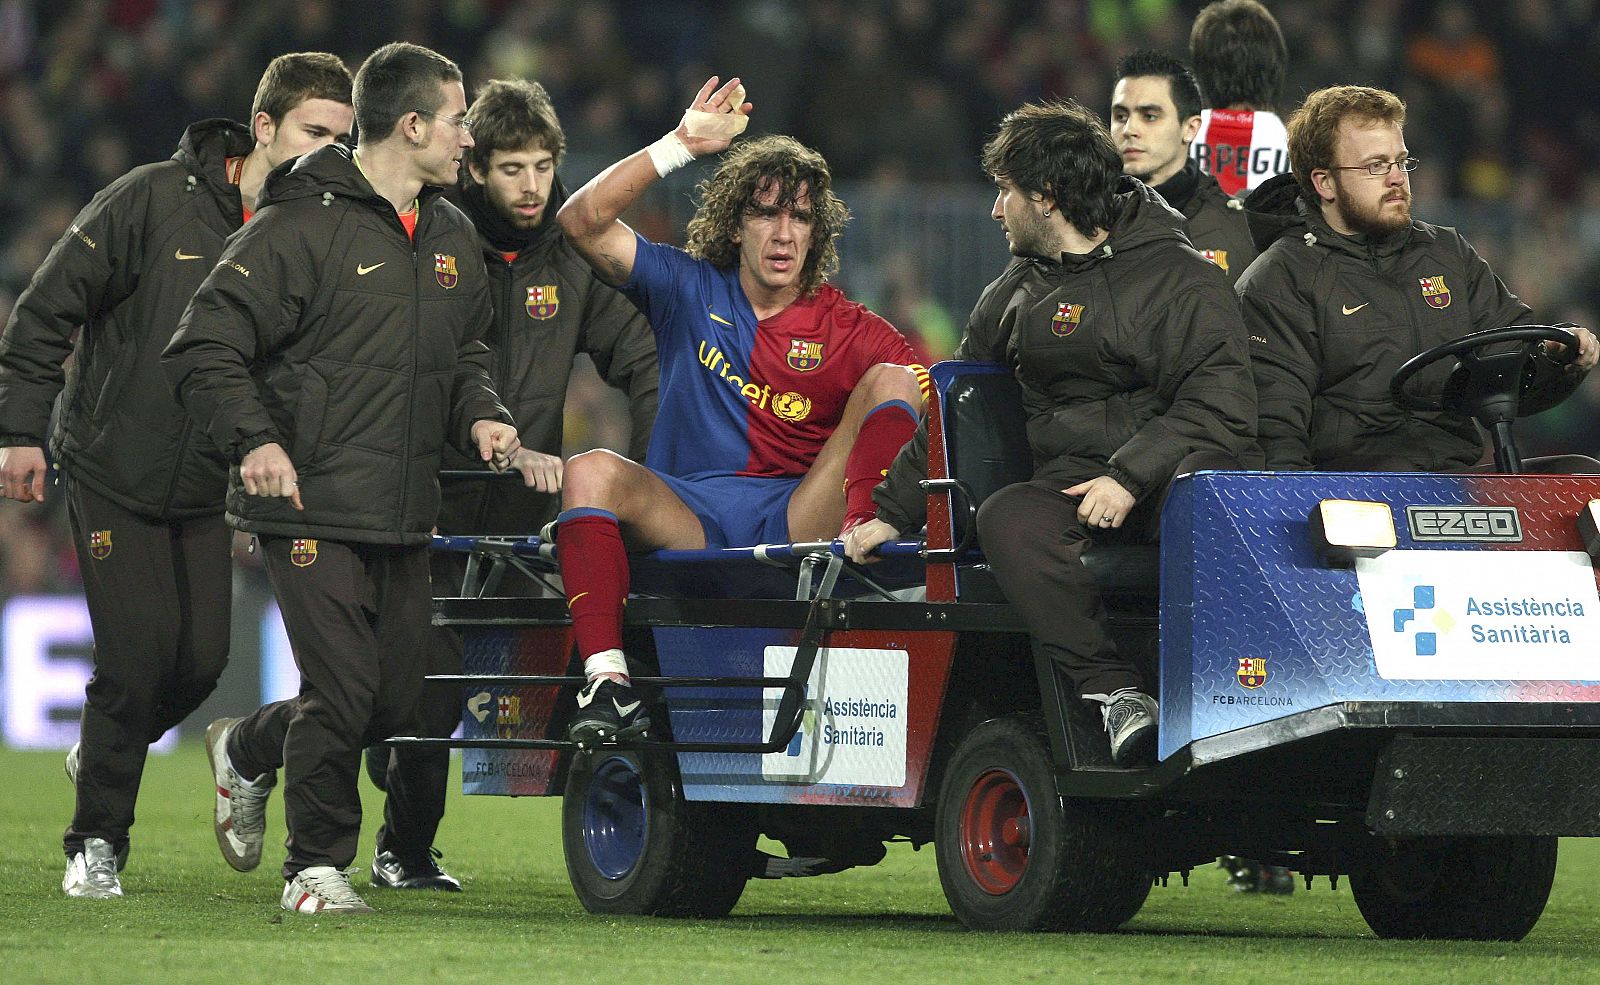 El defensa del FC Barcelona Carlos Puyol se retira lesionado del terreno de juego.